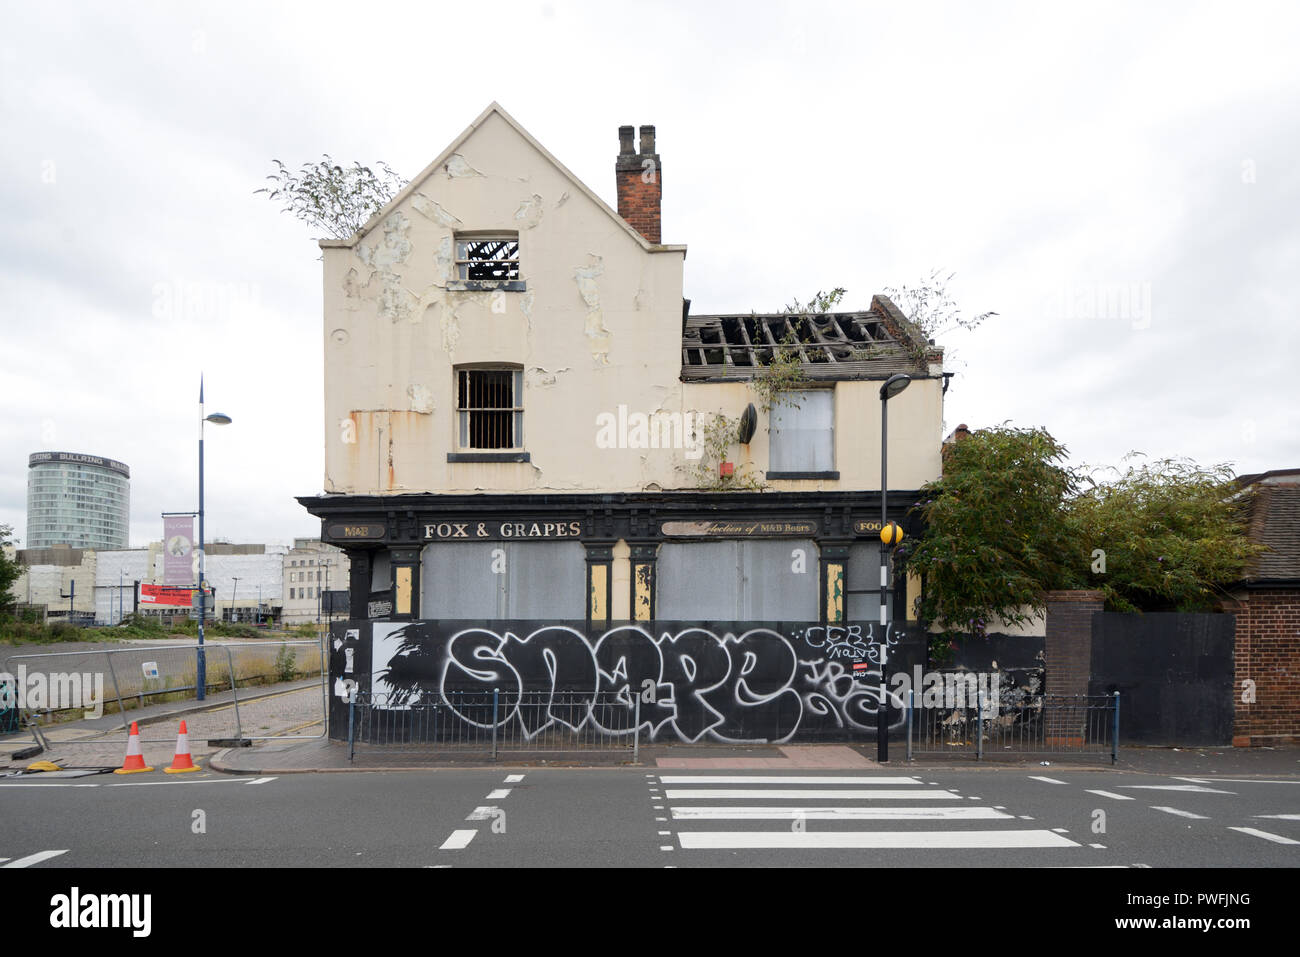 Pub à l'abandon, le renard et les raisins, En cours de démolition pour Programme de réaménagement urbain Digbeth Birmingham England Banque D'Images